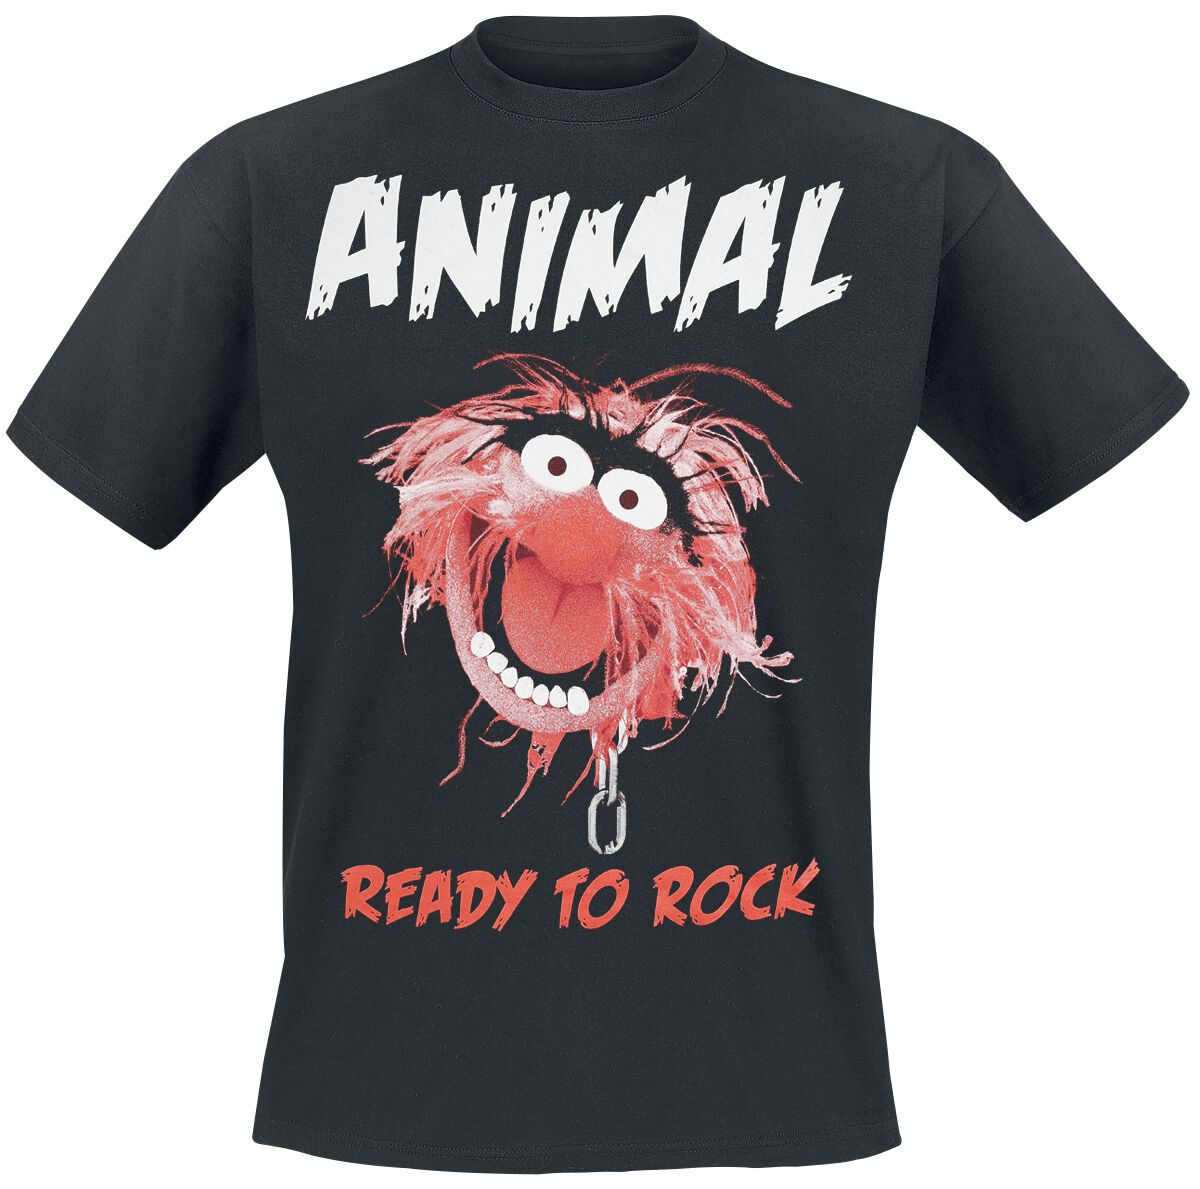 Die Muppets T-Shirt - Animal - Ready To Rock - S bis XXL - für Männer - Größe L - schwarz  - EMP exklusives Merchandise!